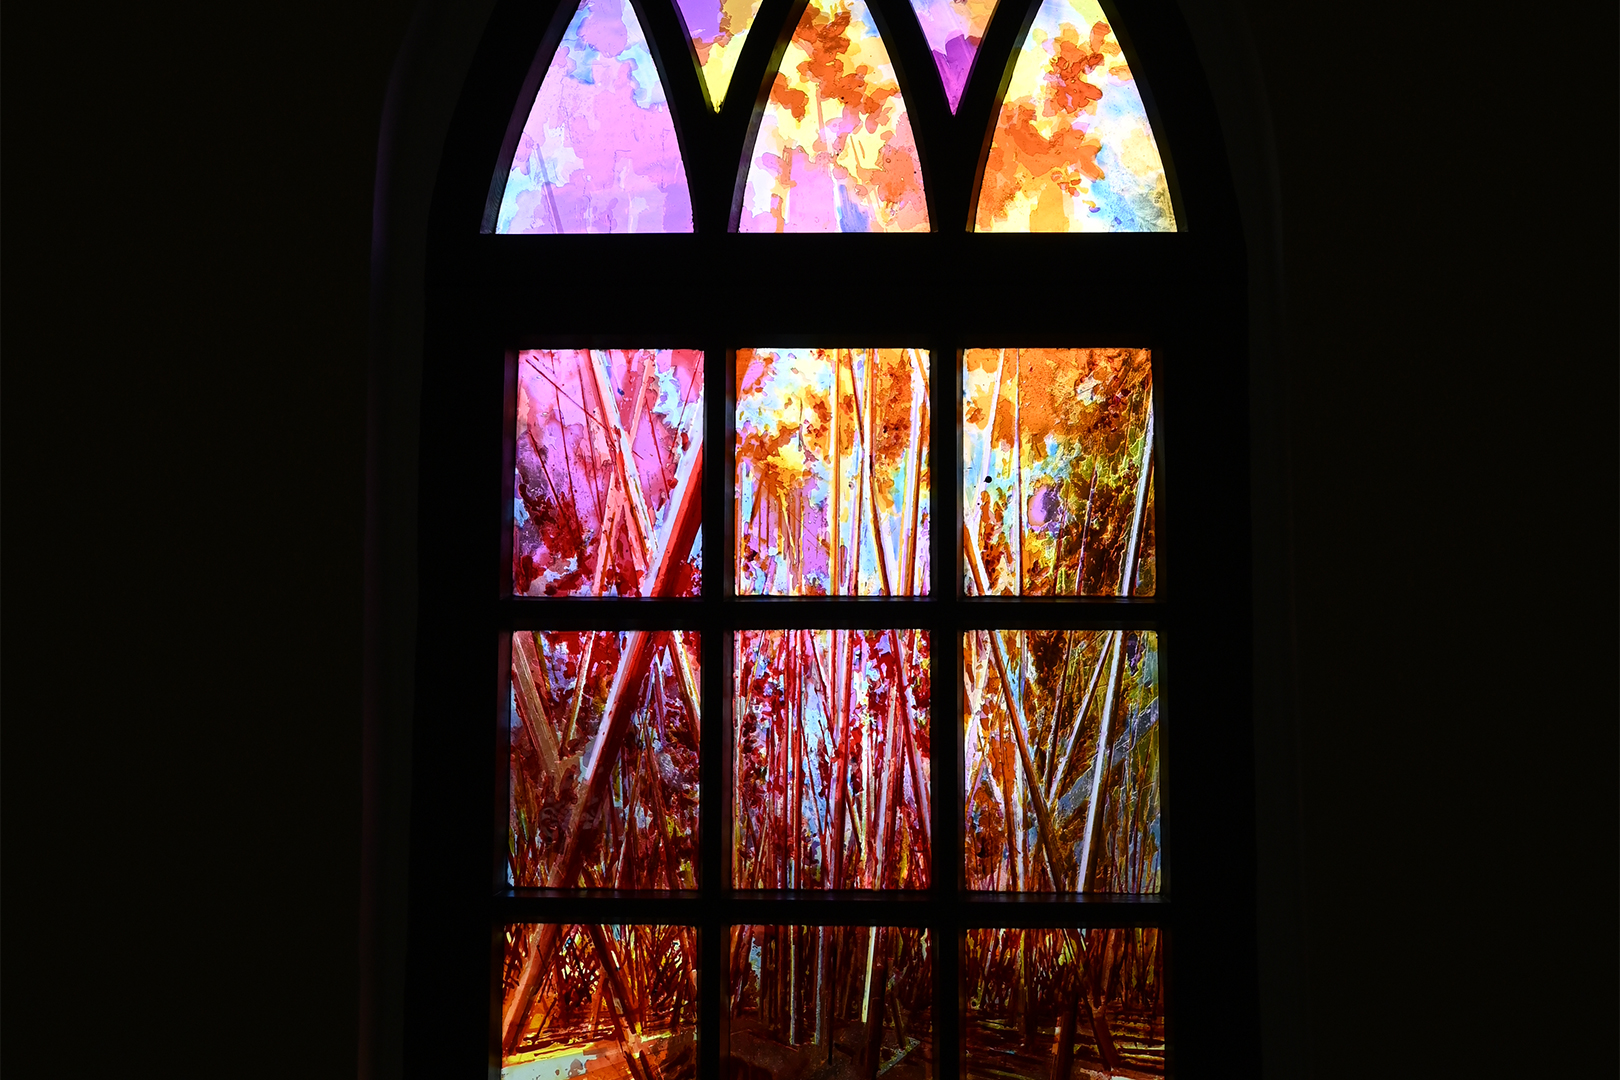 Das neue Kirchenfenster des Künstlers David Schnell in der Dorfkirche Priorau ist Teil des Projektes „Kultur in Lichtungen“. Dieses wird durch das Programm „Kirchturmdenken“ gefördert. Foto: Johannes Killyen